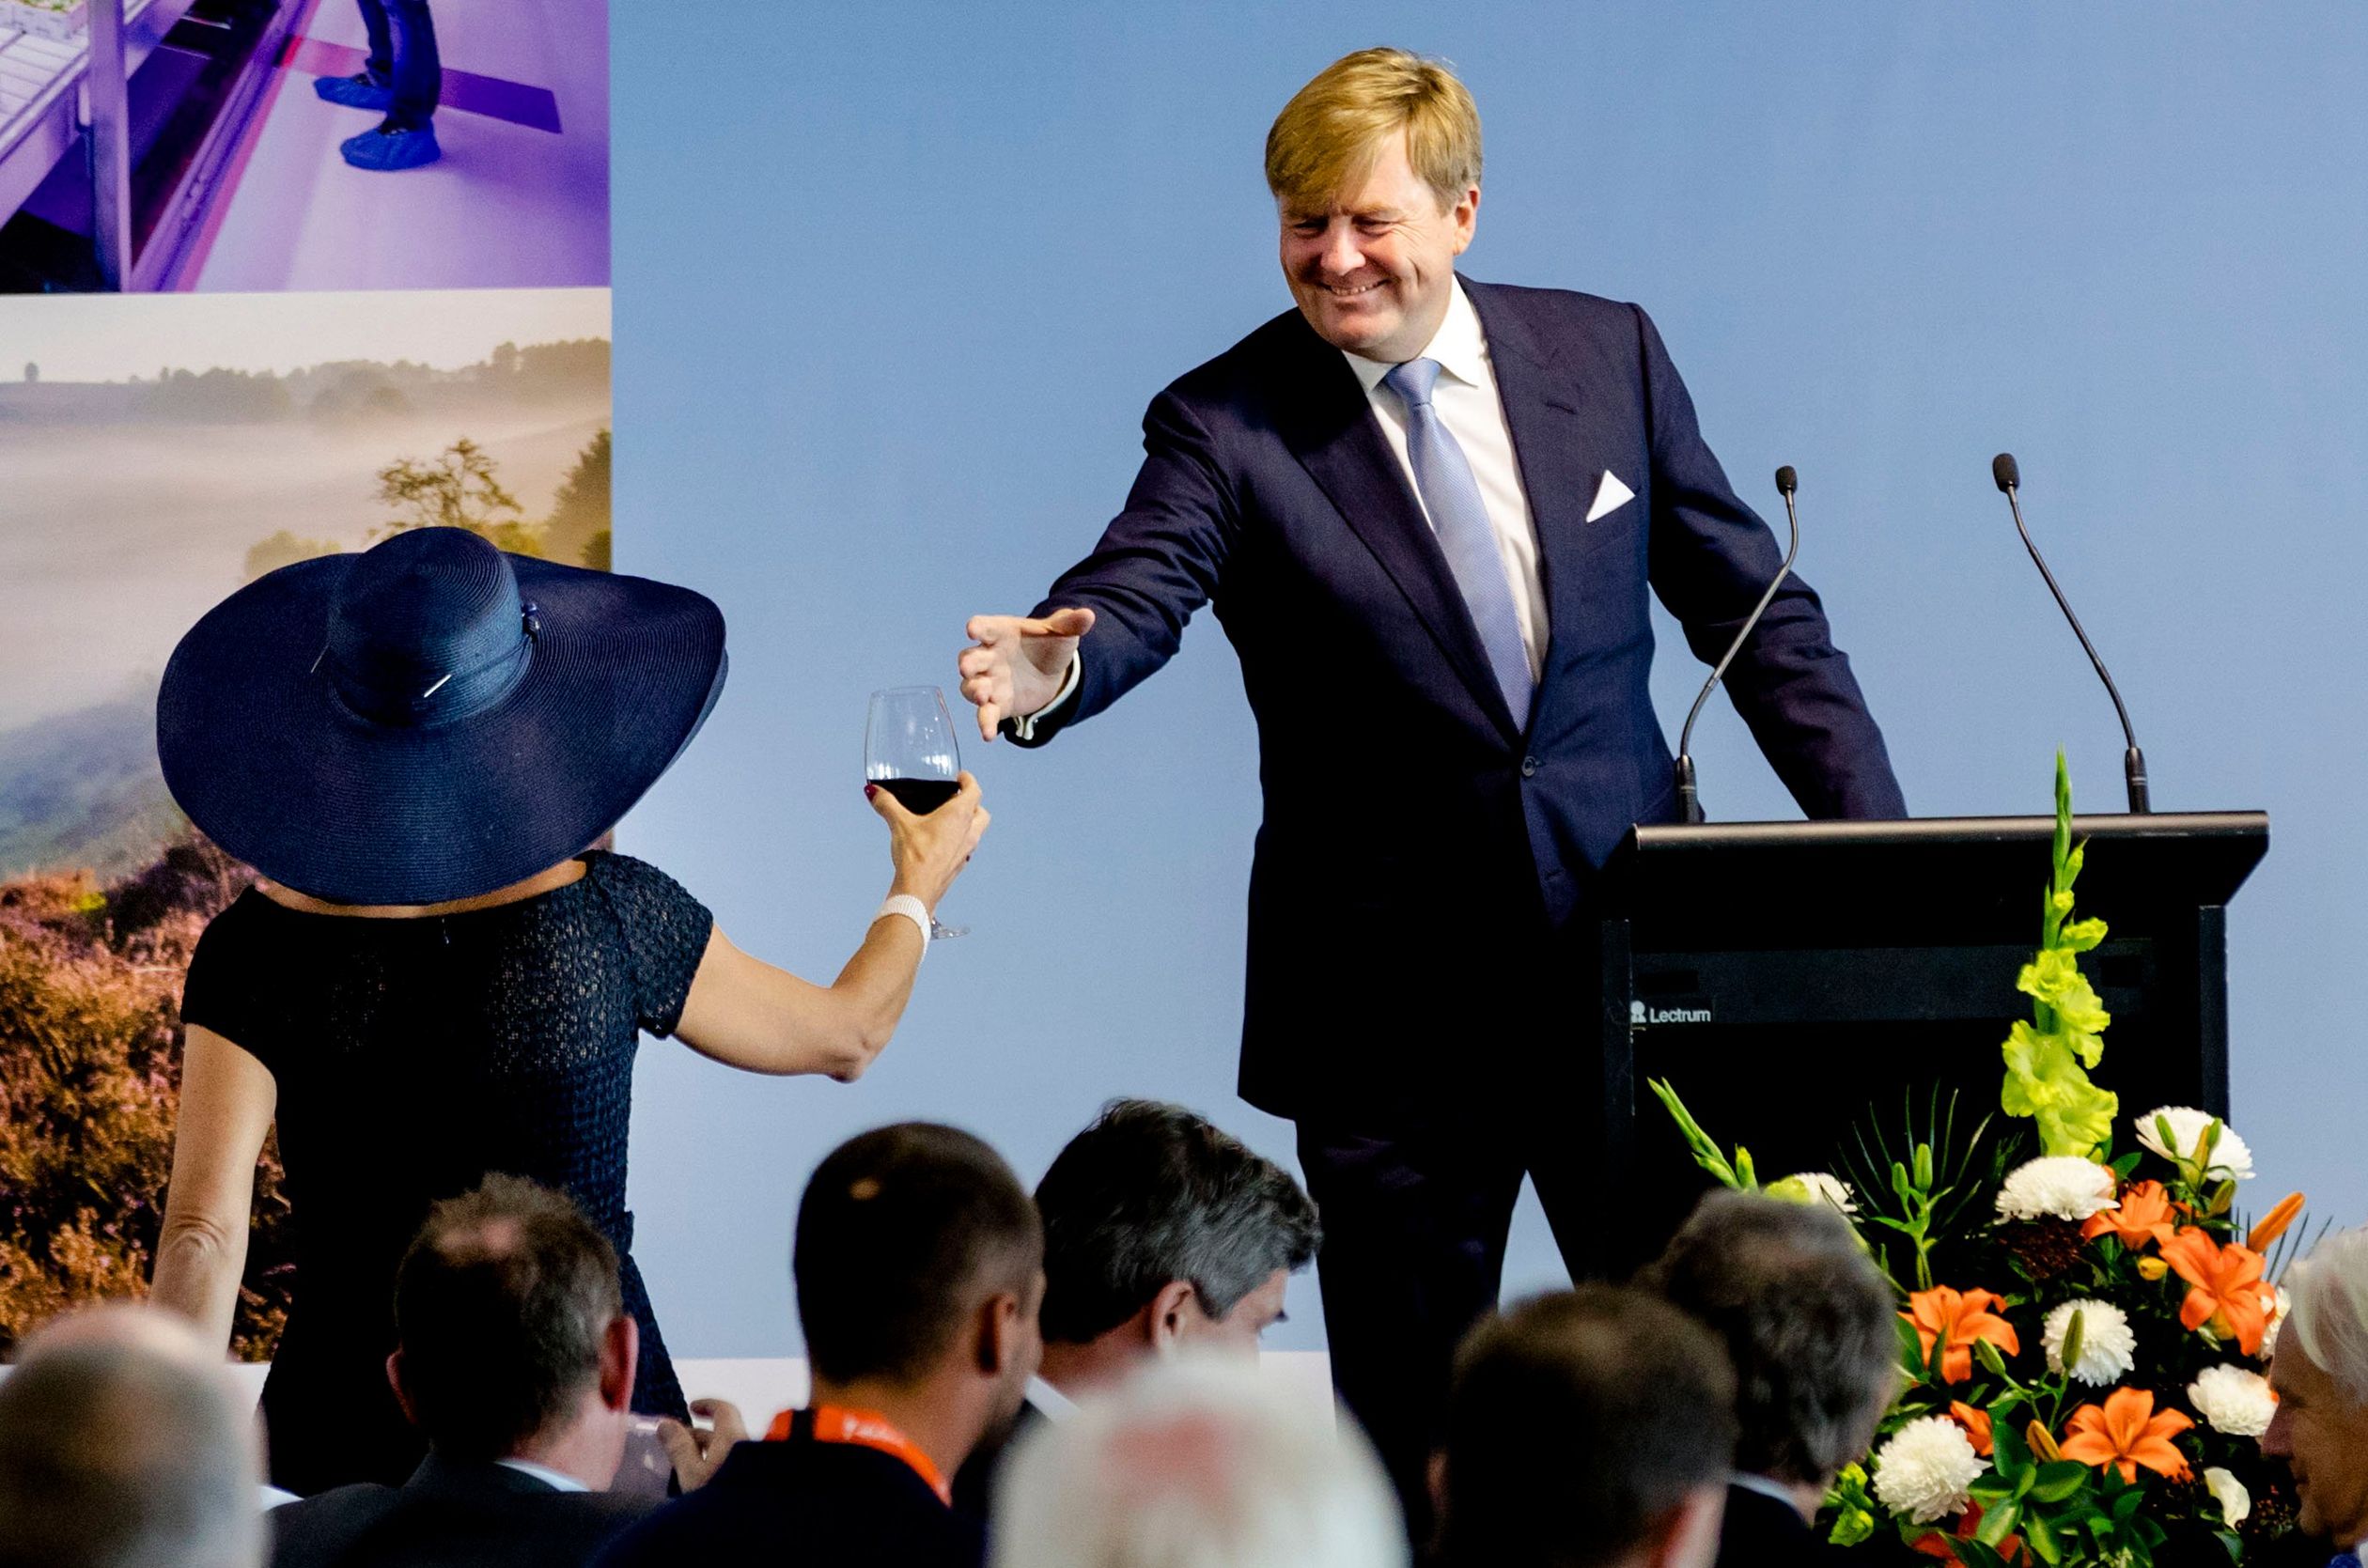 Koningin Máxima geeft een glas rode wijn aan koning Willem-Alexander tijdens zijn speech in Nieuw-Zeeland.